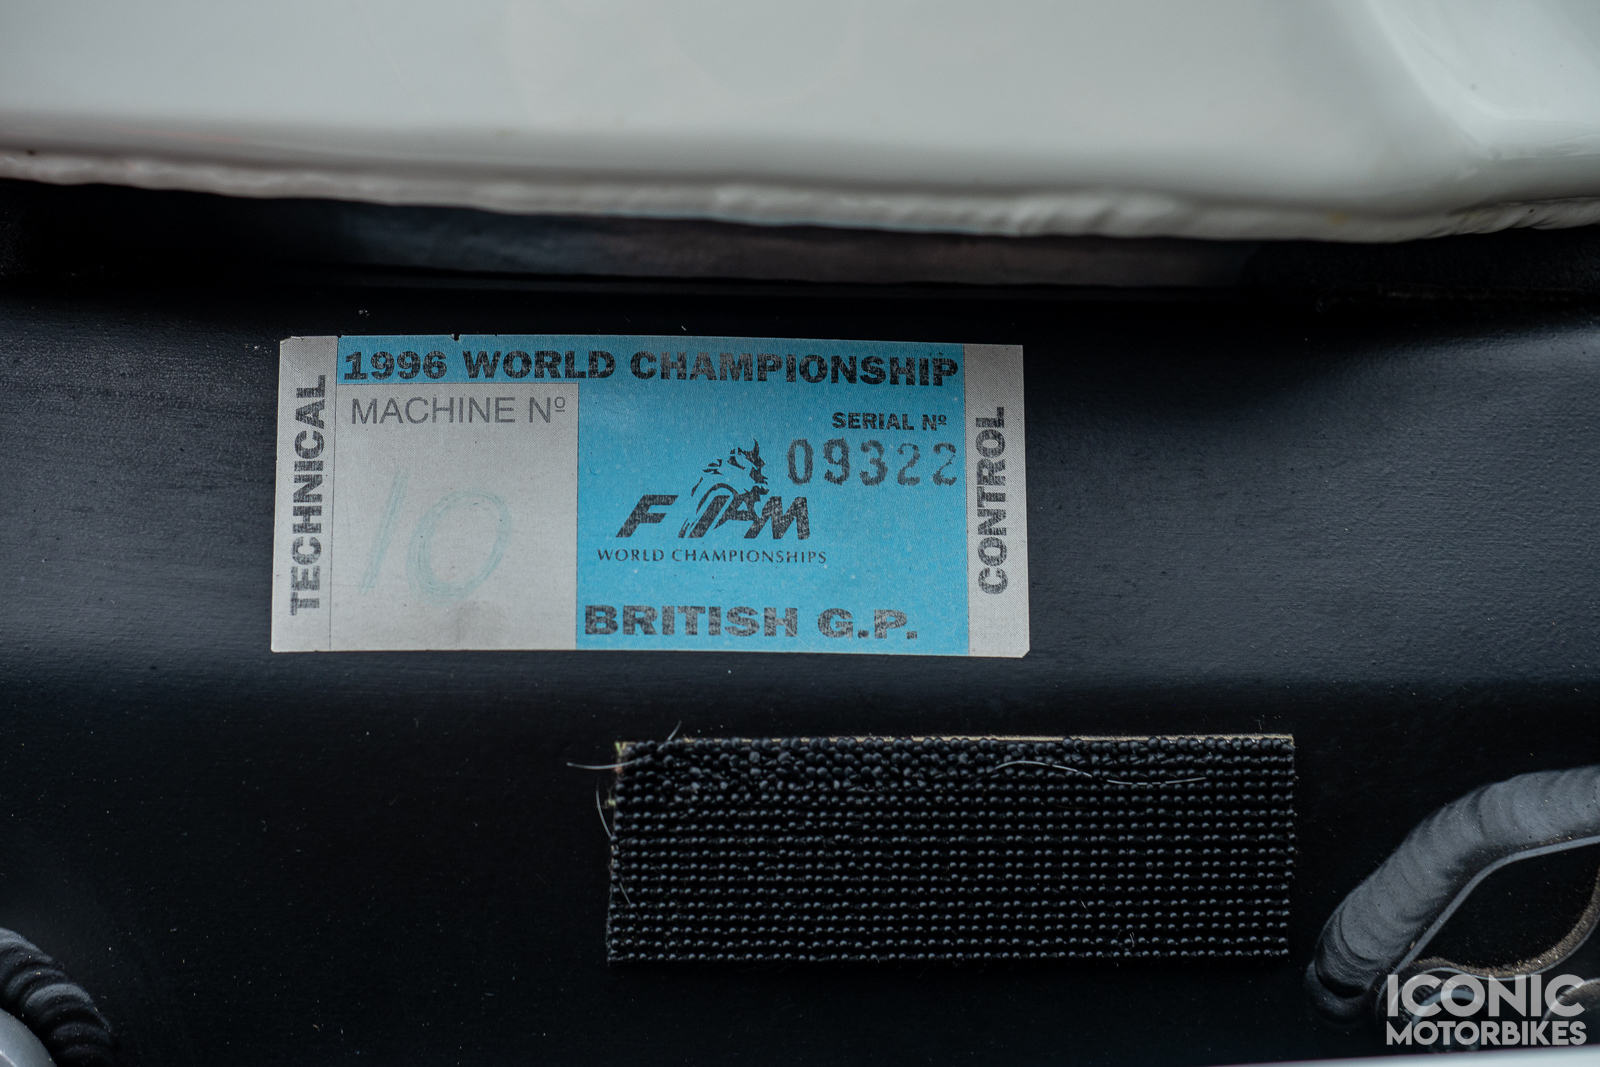 車上還能看到1996年的FIM參賽證明貼紙